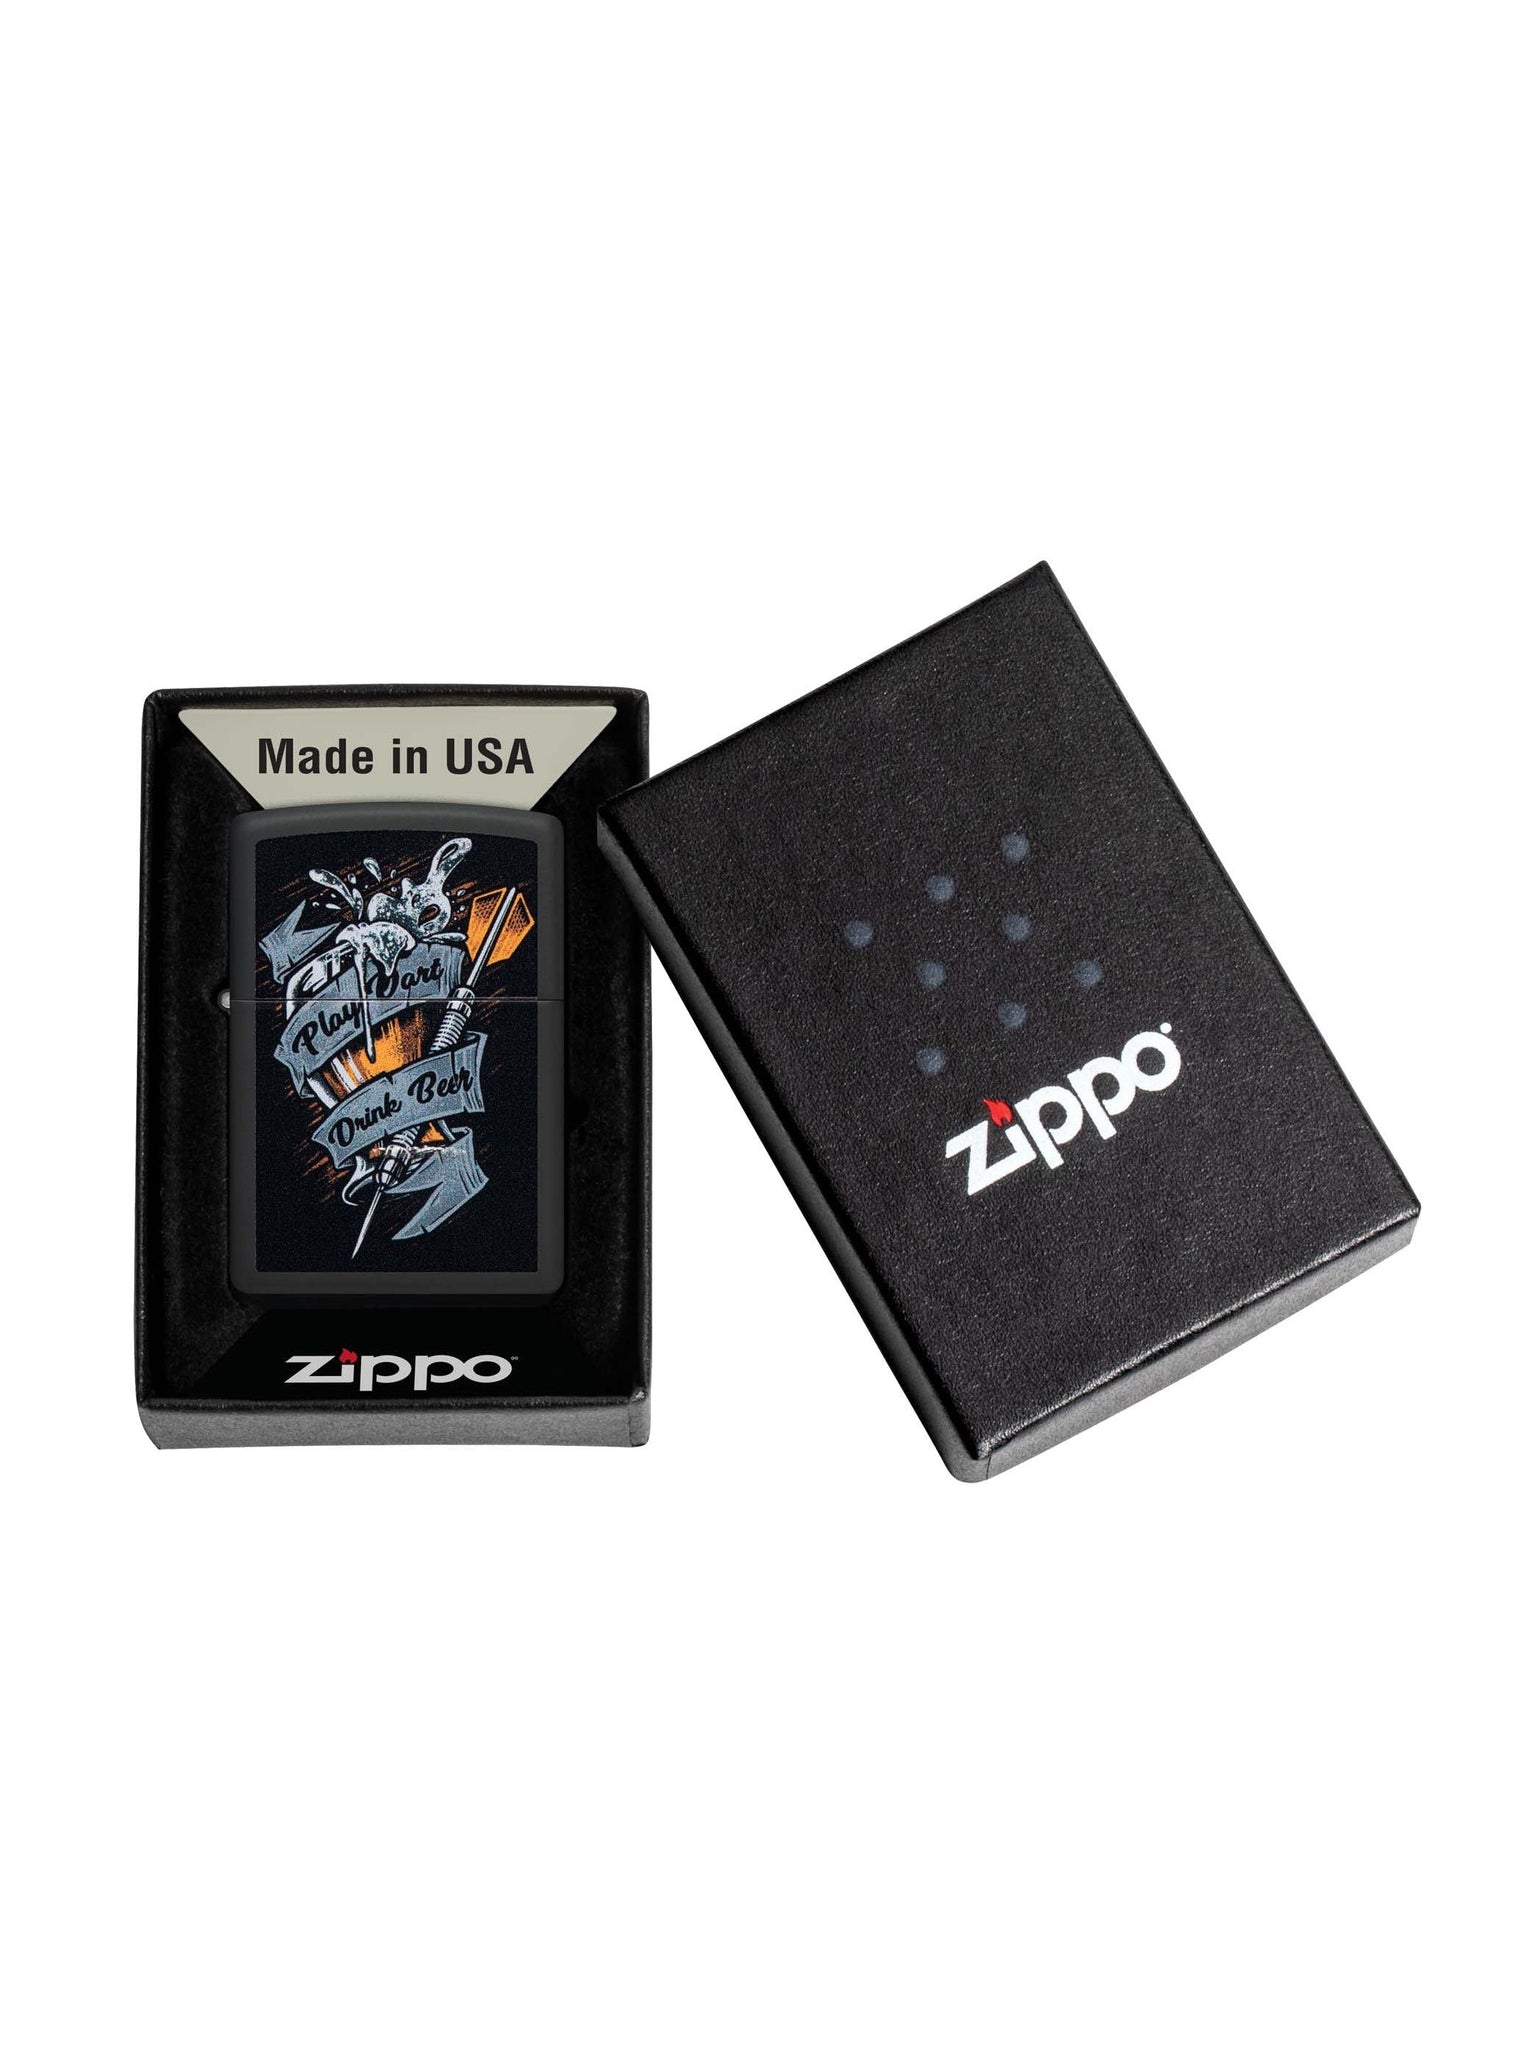 Zippo Lighter: Play Darts, Drink Beer - Black Matte 48679